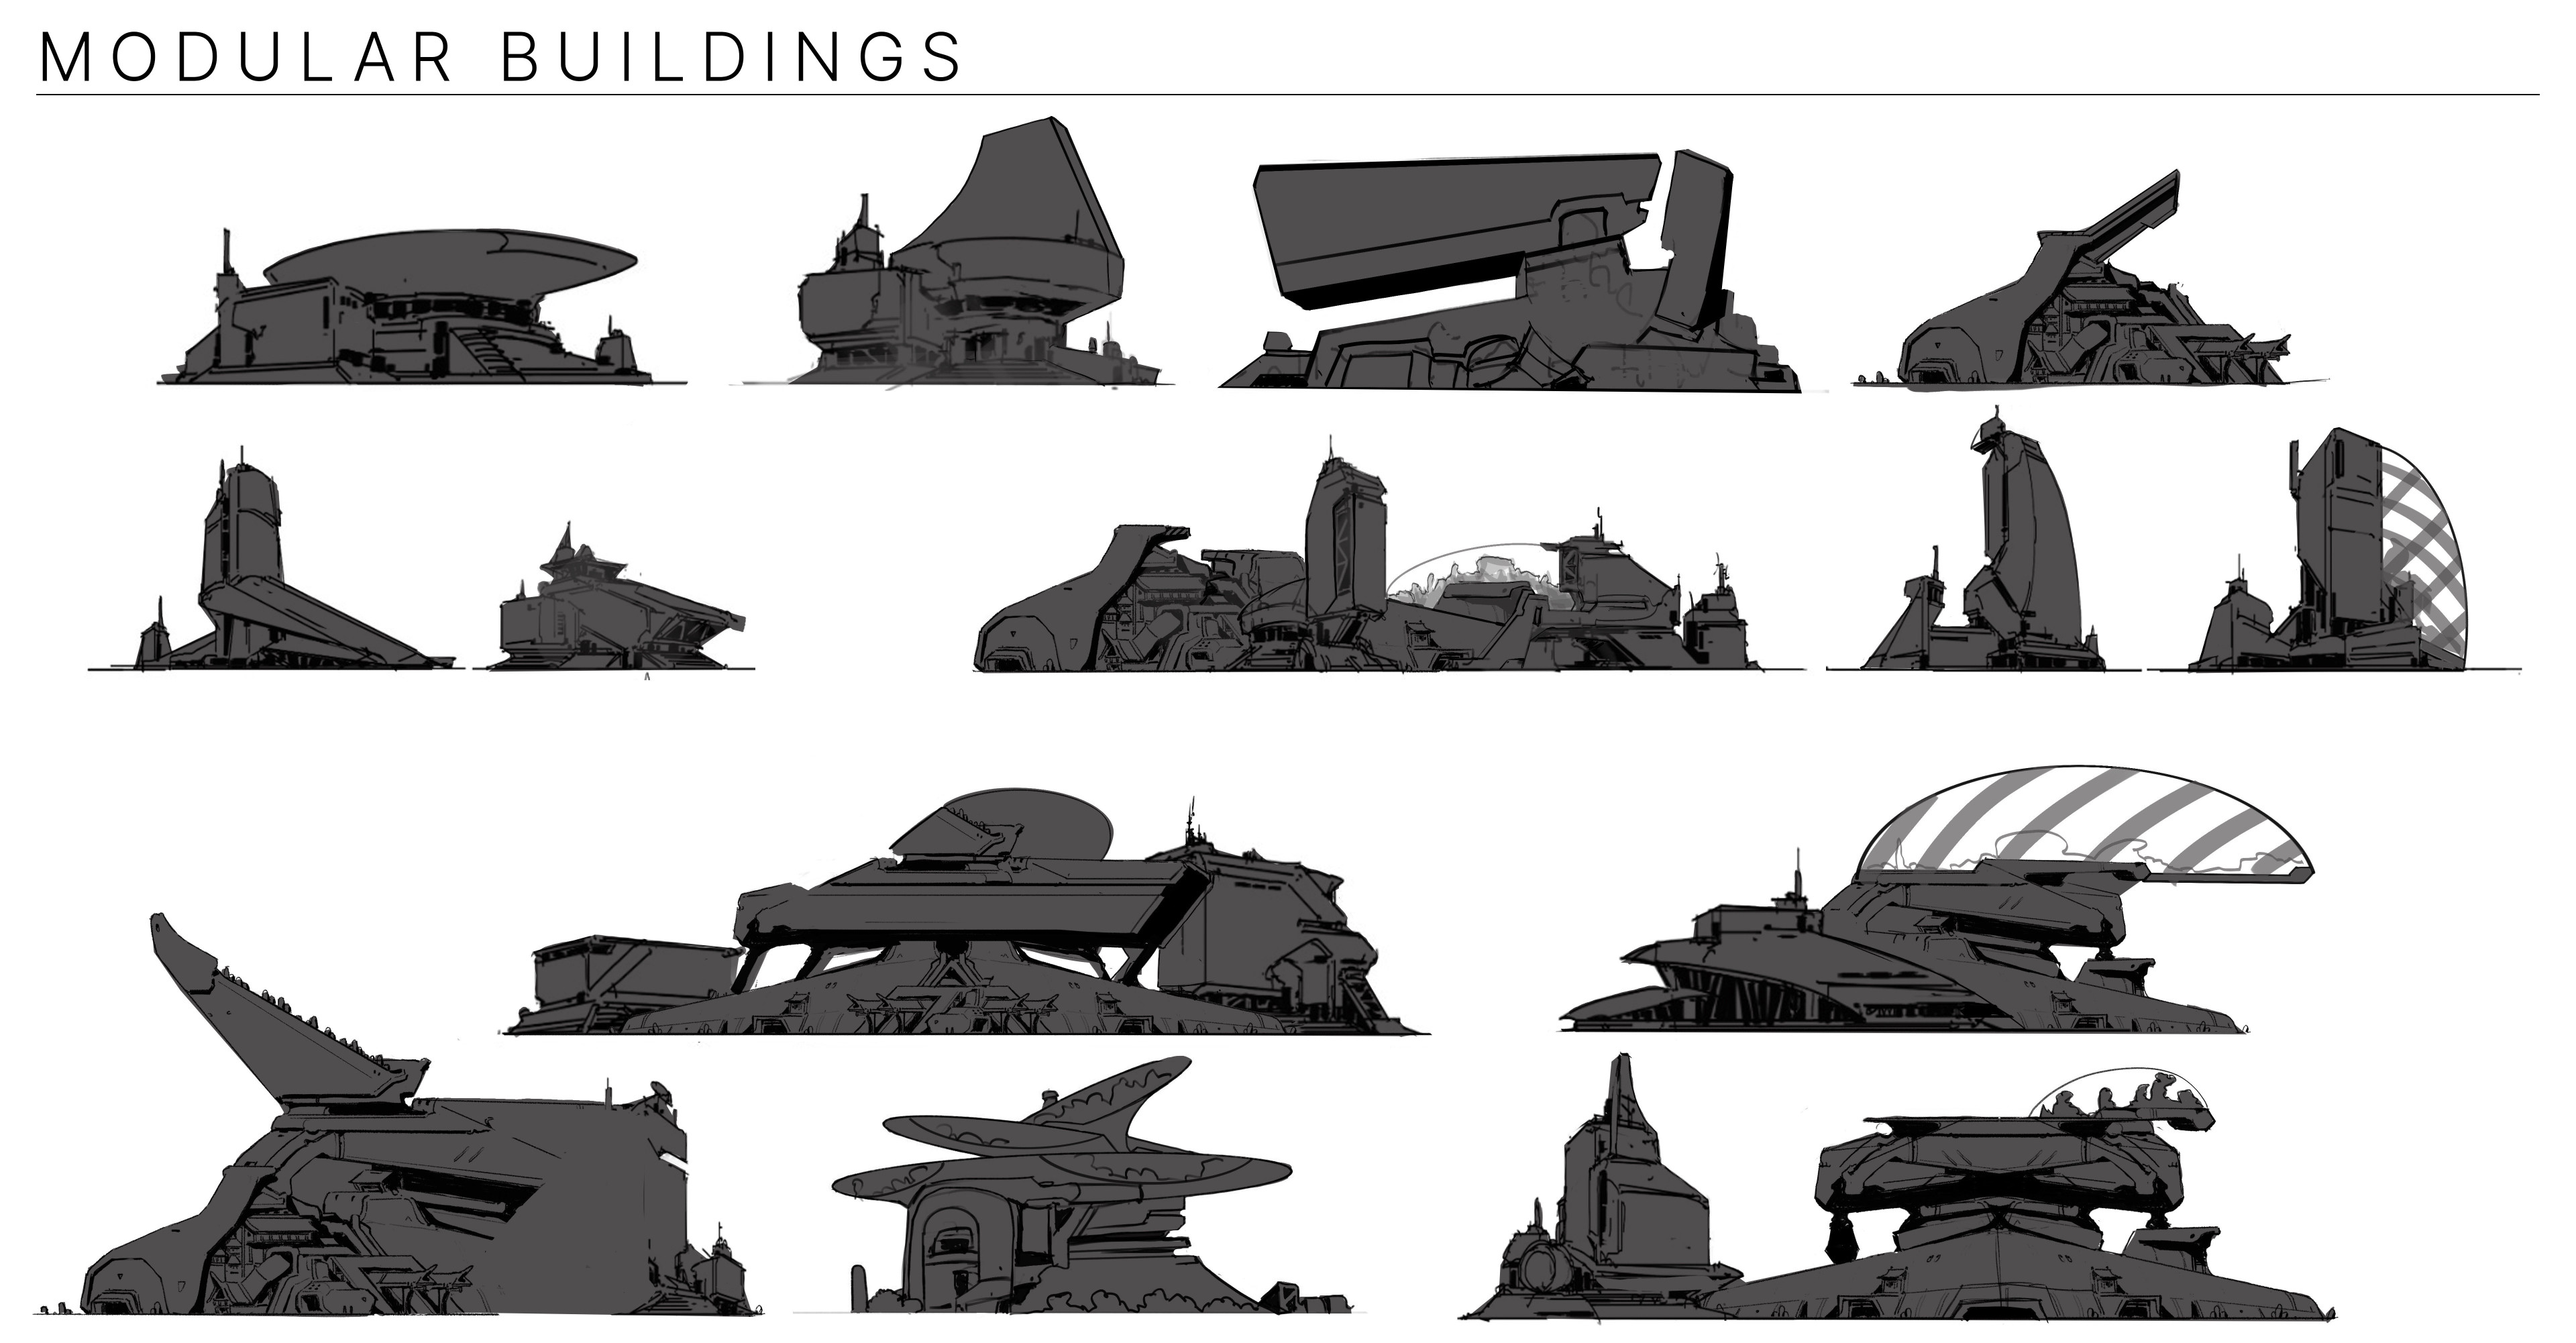 Modular building thumbnails.